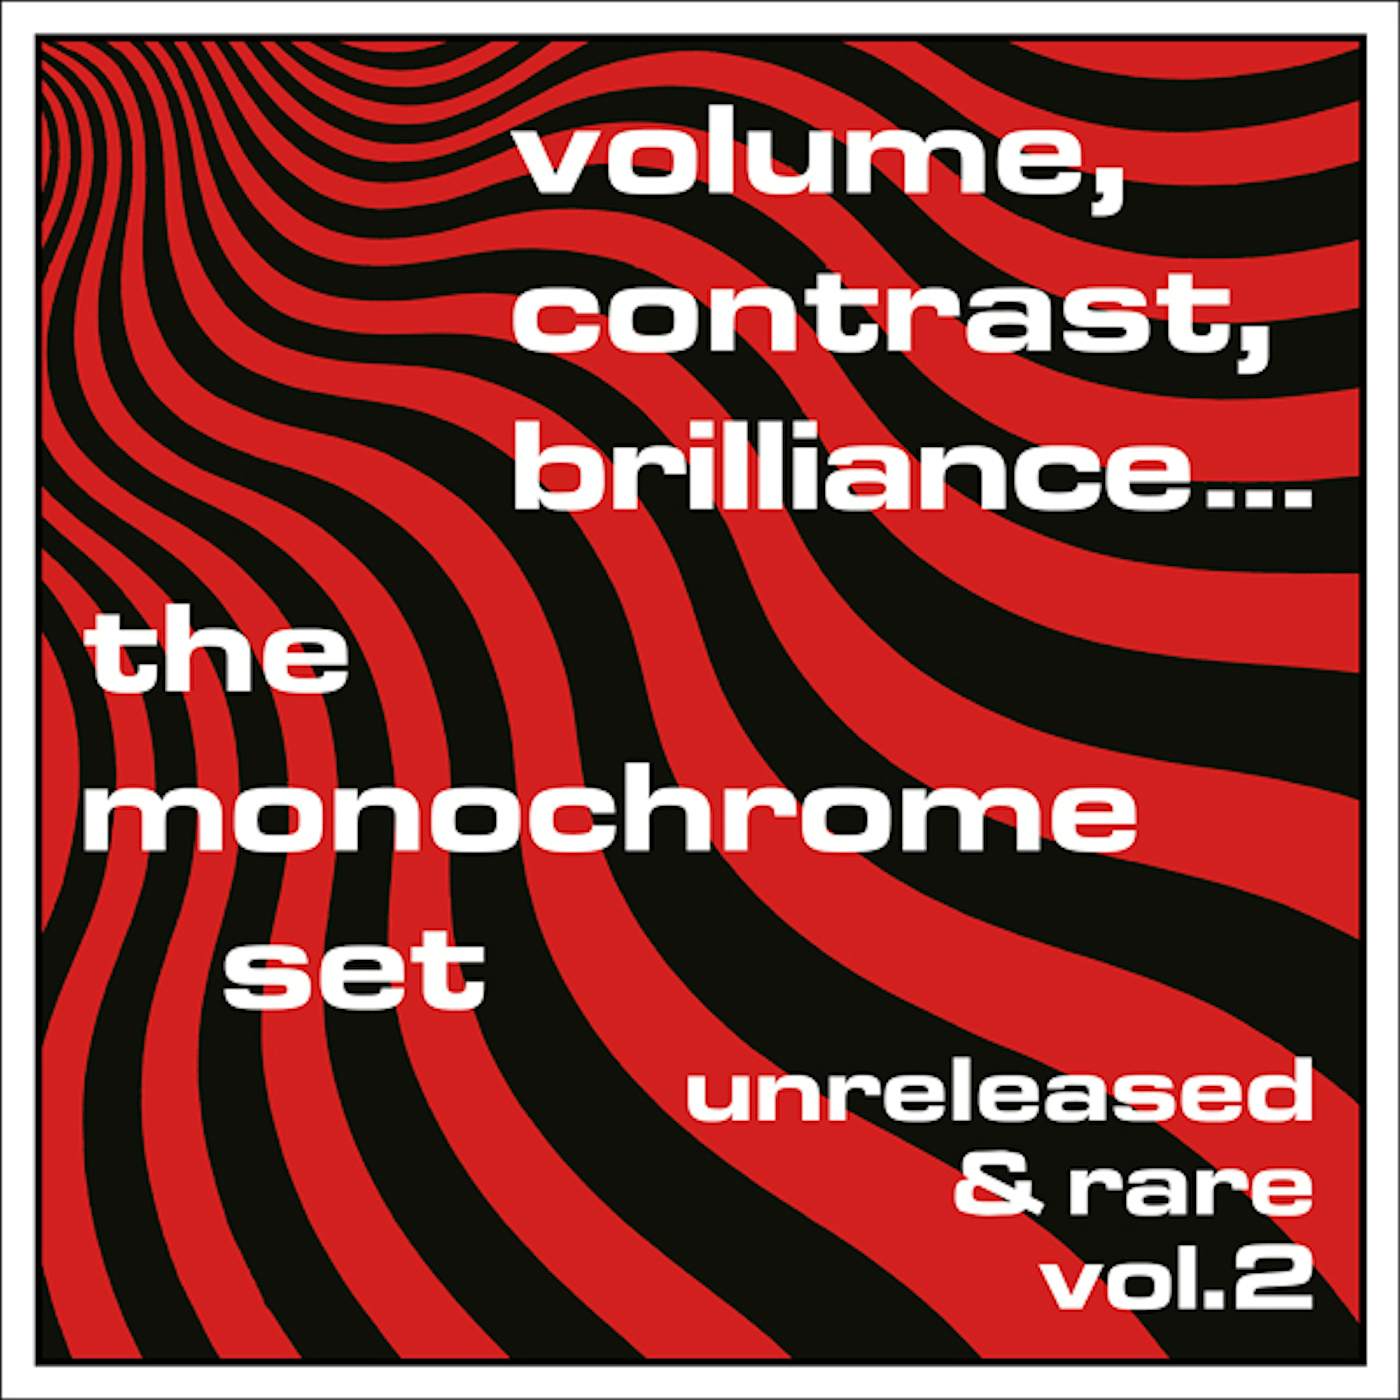 The Monochrome Set VOLUME CONTRAST BRILLIANCE UNRELEASED & RARE 2 Vinyl Record